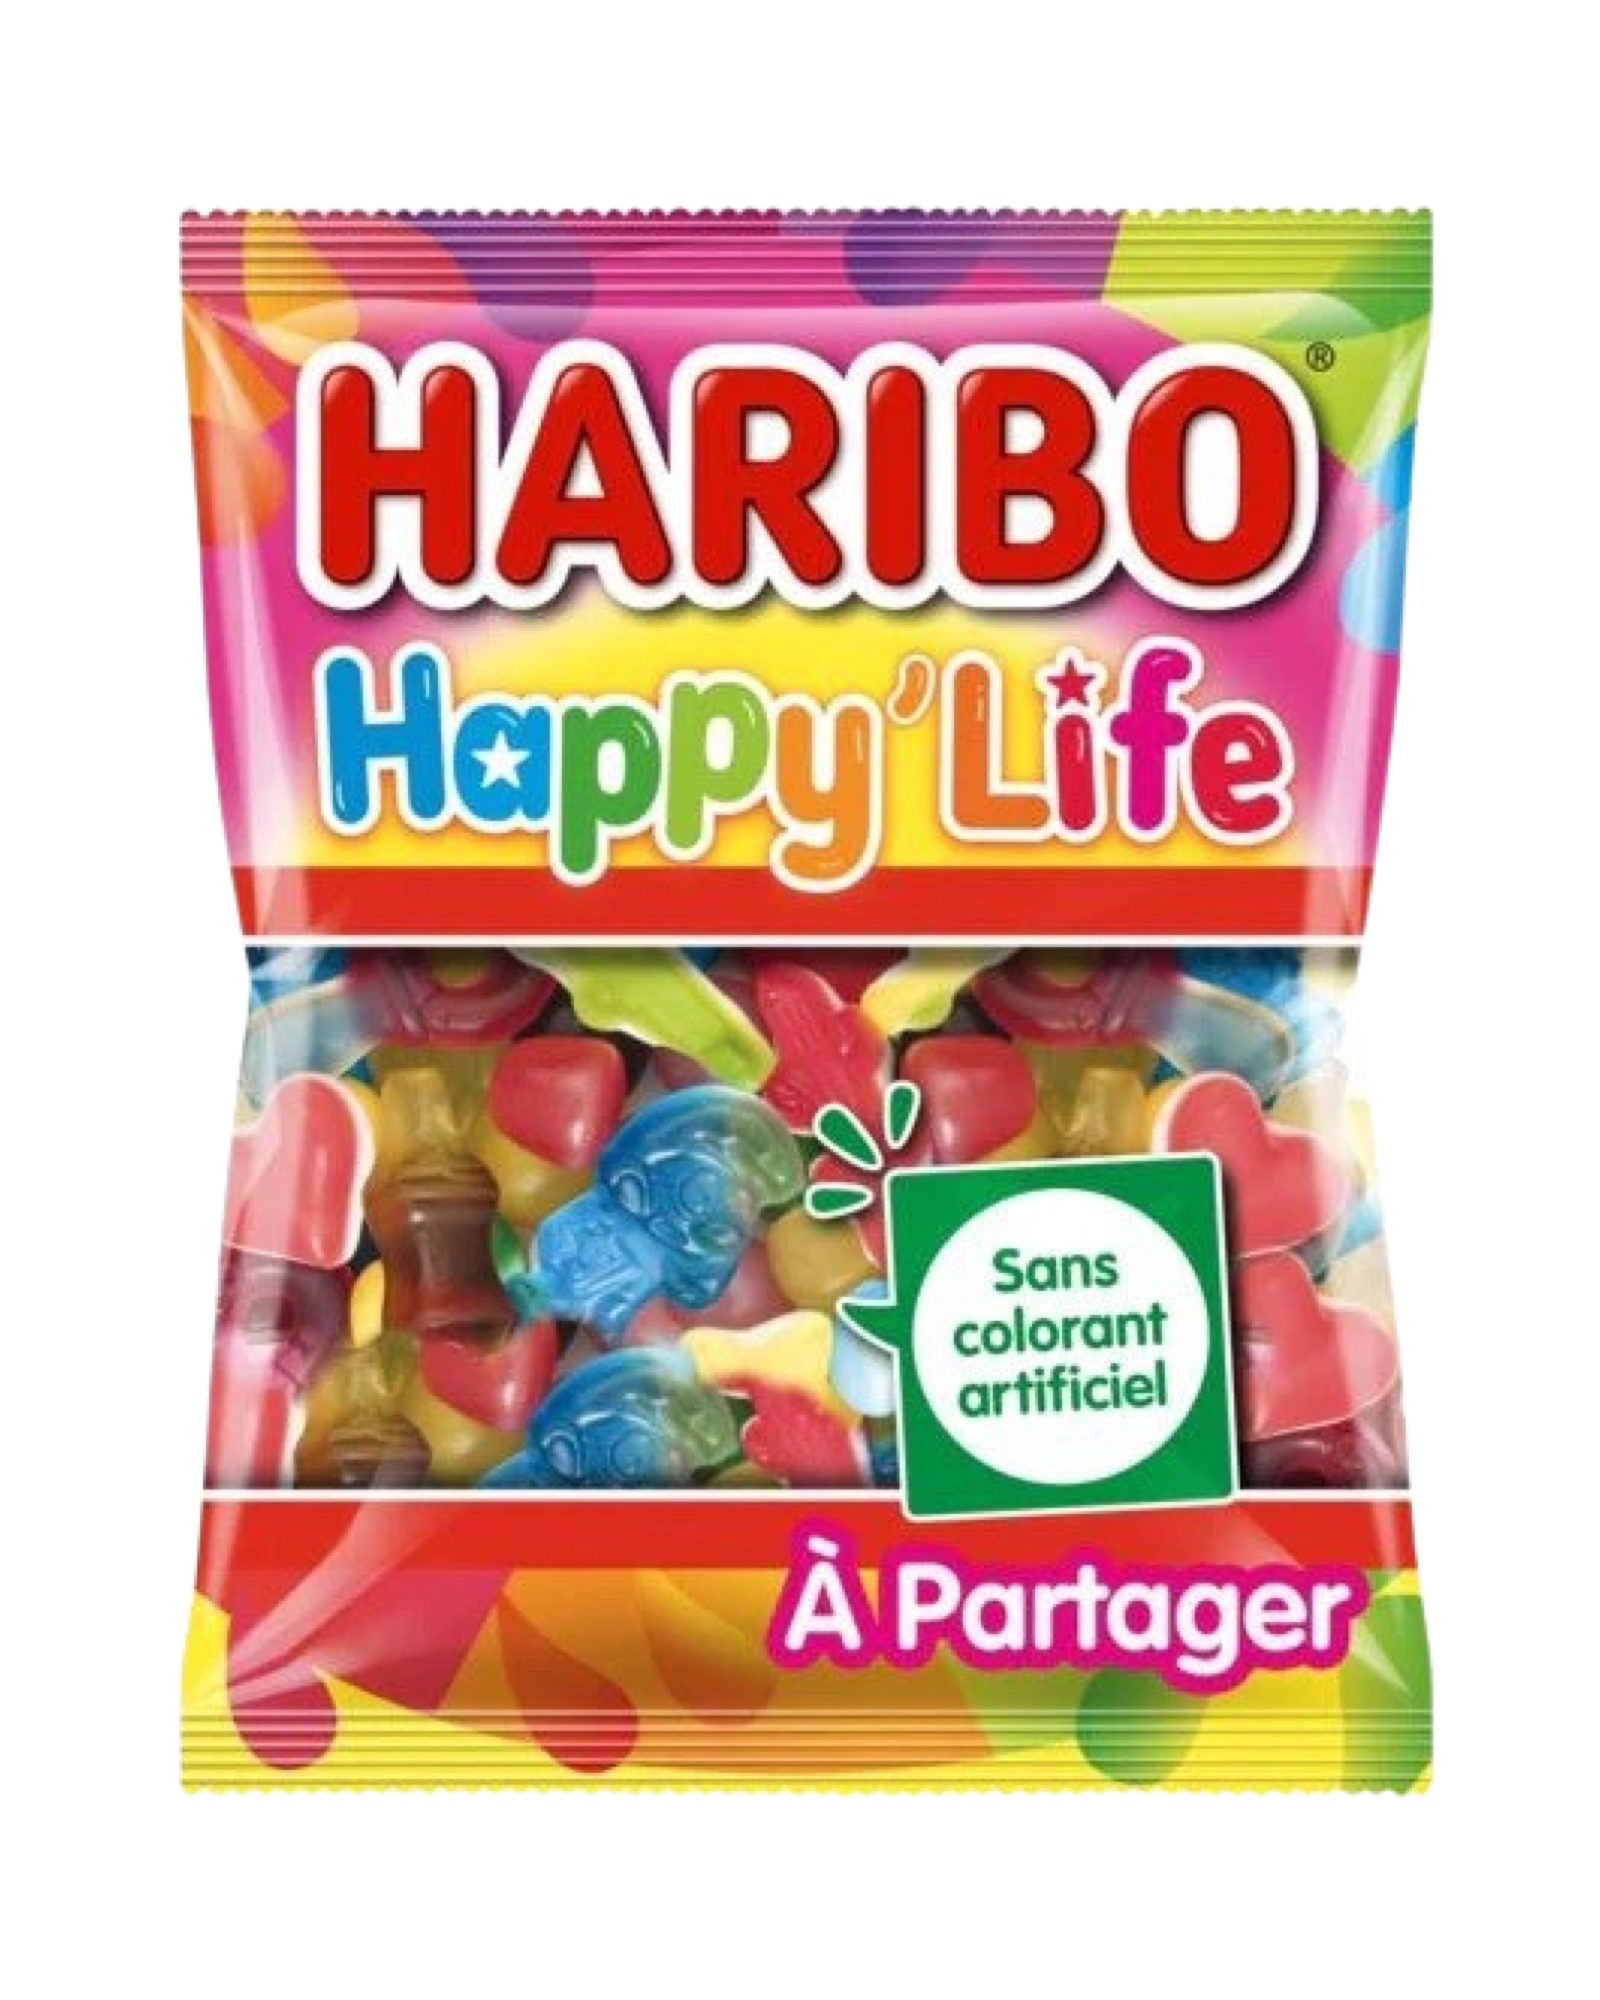 Haribo “Happy Life” (France) - Exotic Soda Company